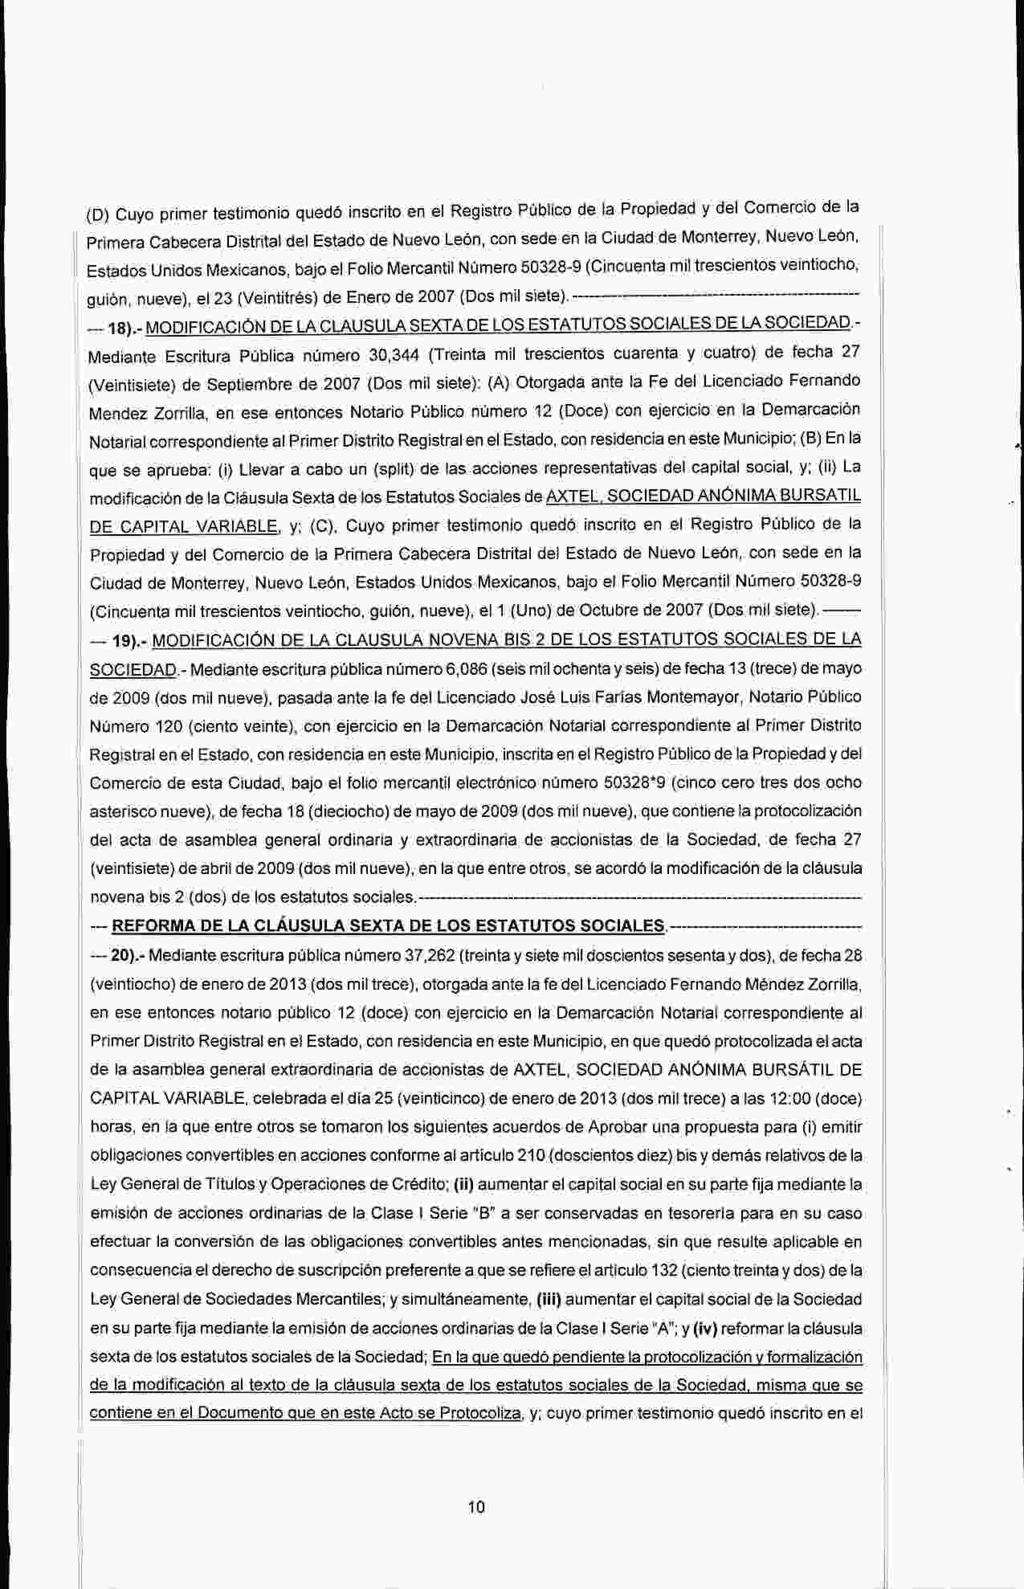 D) Cuyo primer testimonio qued6 inscrito en el Registro Publico de Ia Propiedad y del Comercio de la Primera Cabecera Distrital del Estado de Nuevo LeOn, con sede en la Ciudad de Monterrey, Nuevo